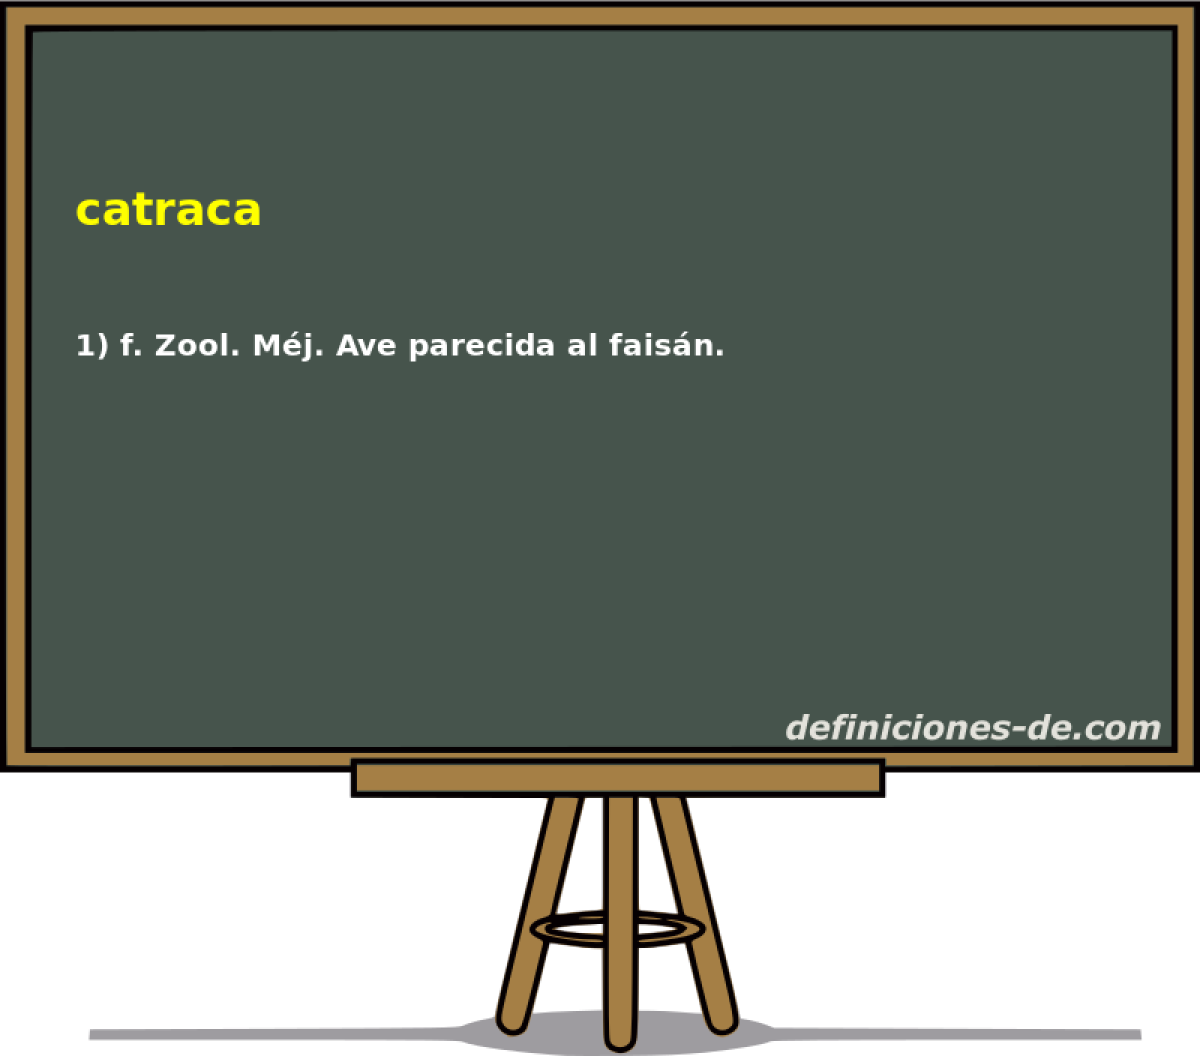 catraca 